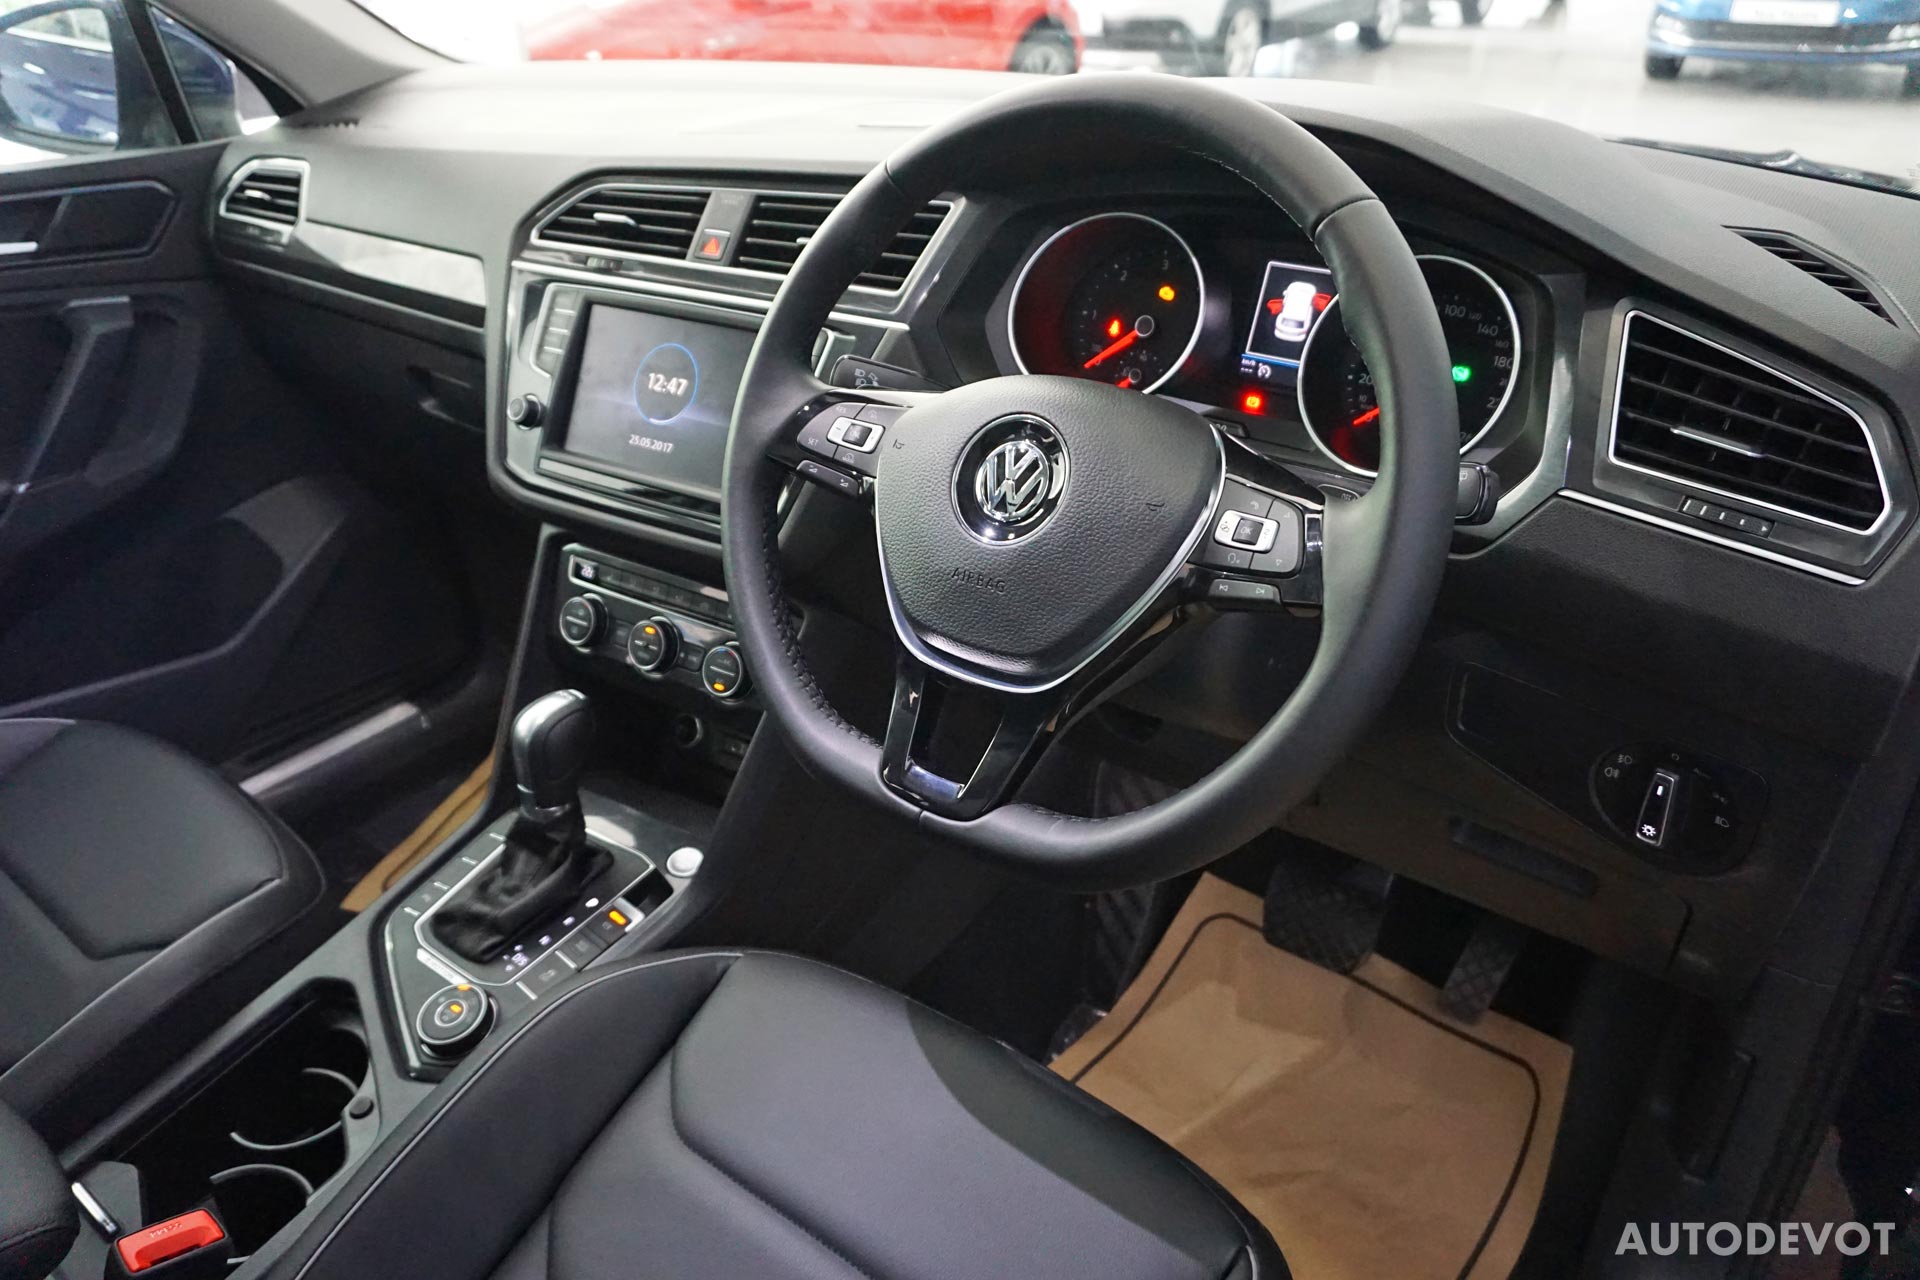 Volkswagen-Tiguan-India-interior